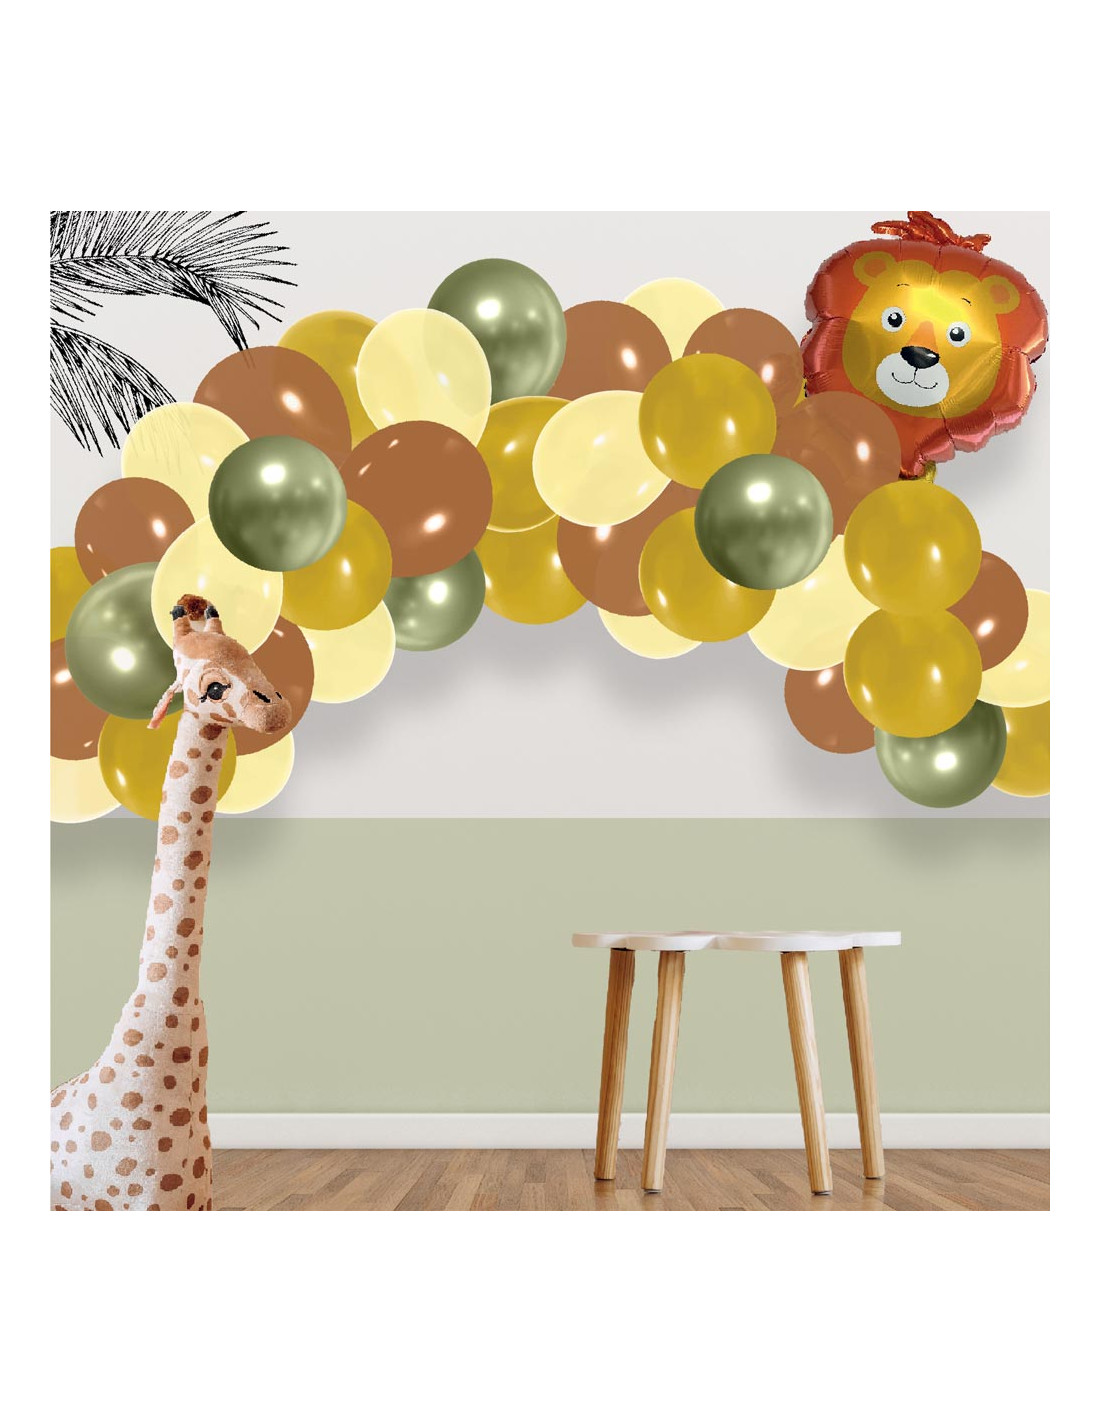 Ballon à personnaliser - Animaux de la Forêt pour l'anniversaire